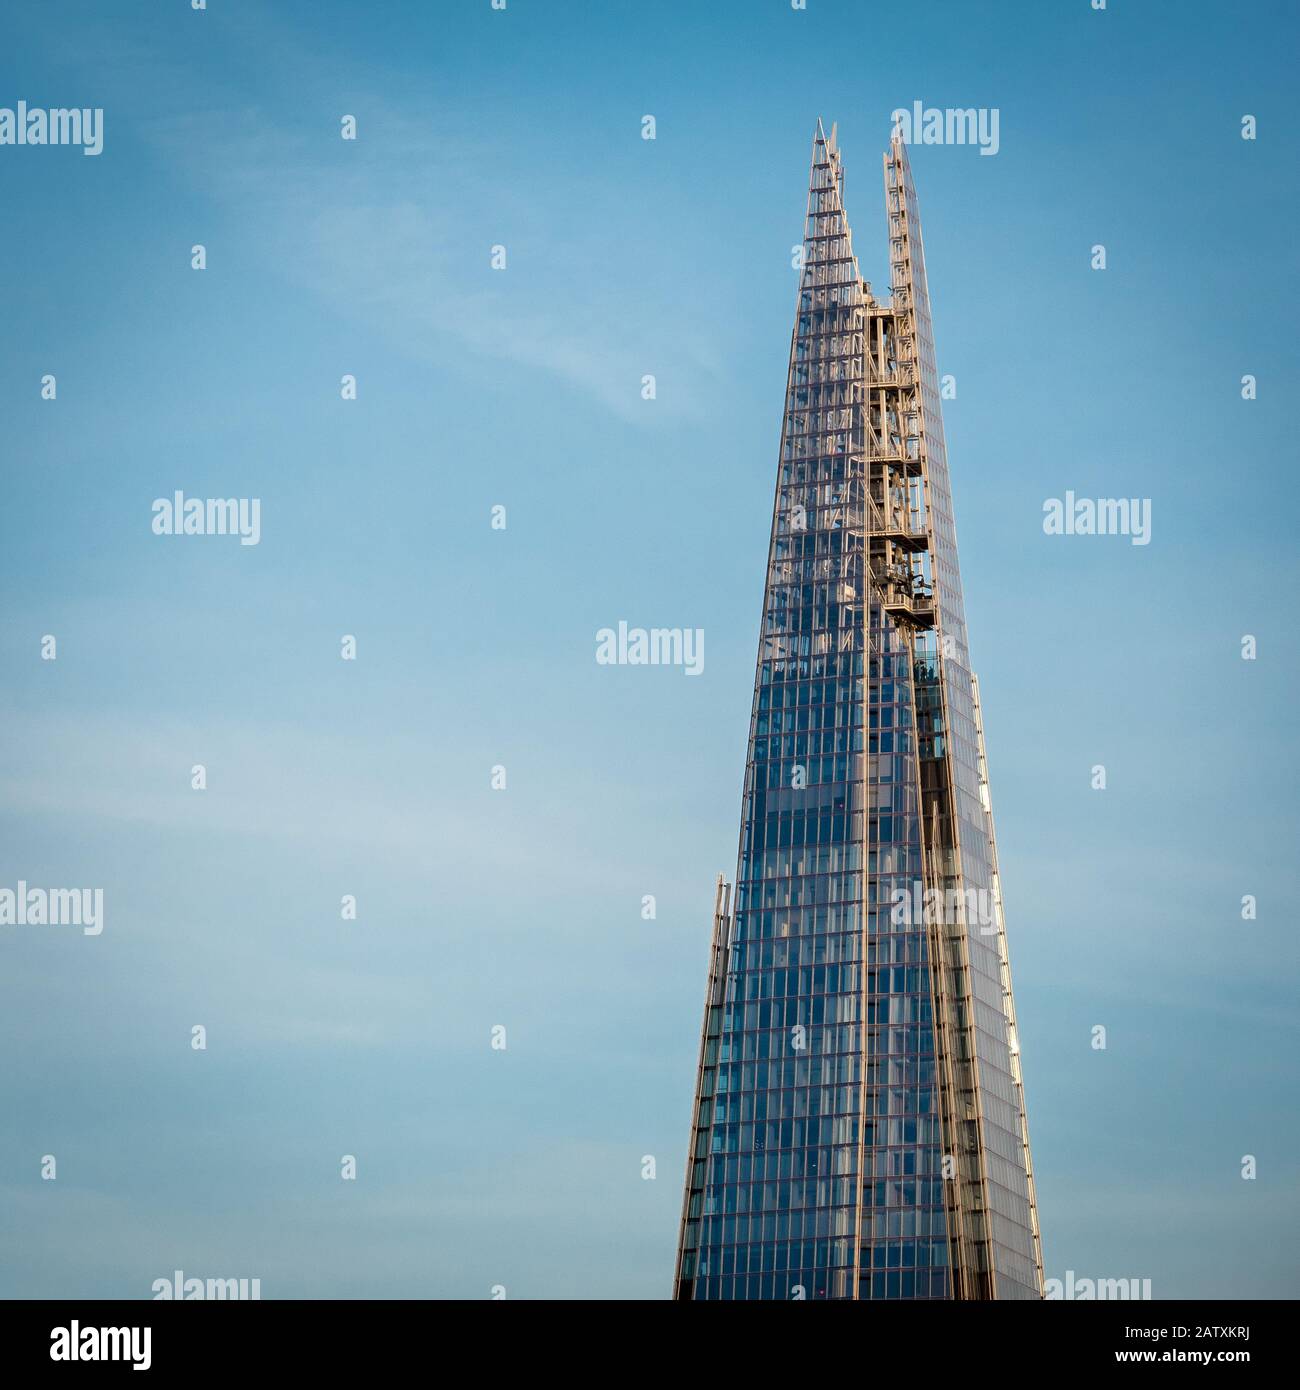 The Shard, Londra. Teleobiettivo dei piani superiori e piattaforma panoramica dell'iconico edificio London Shard. Foto Stock